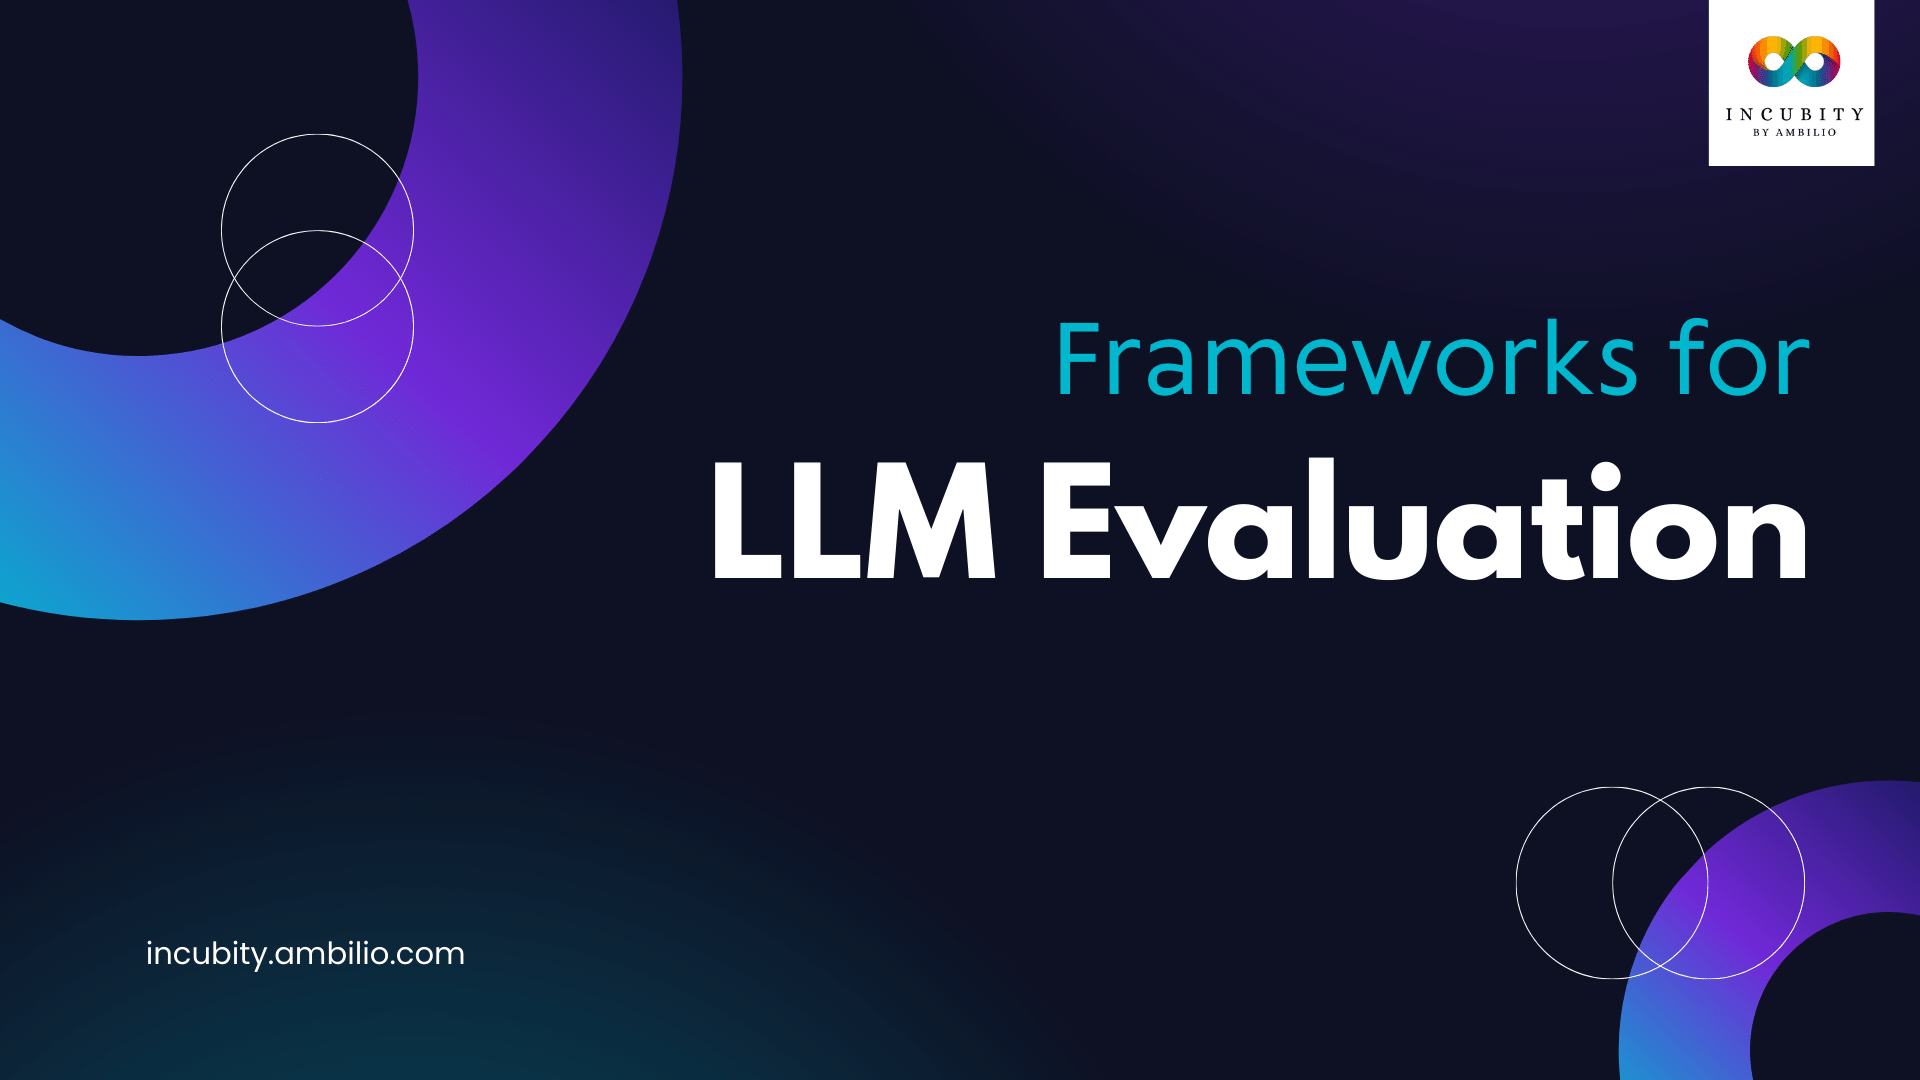 LLM Evaluation Frameworks